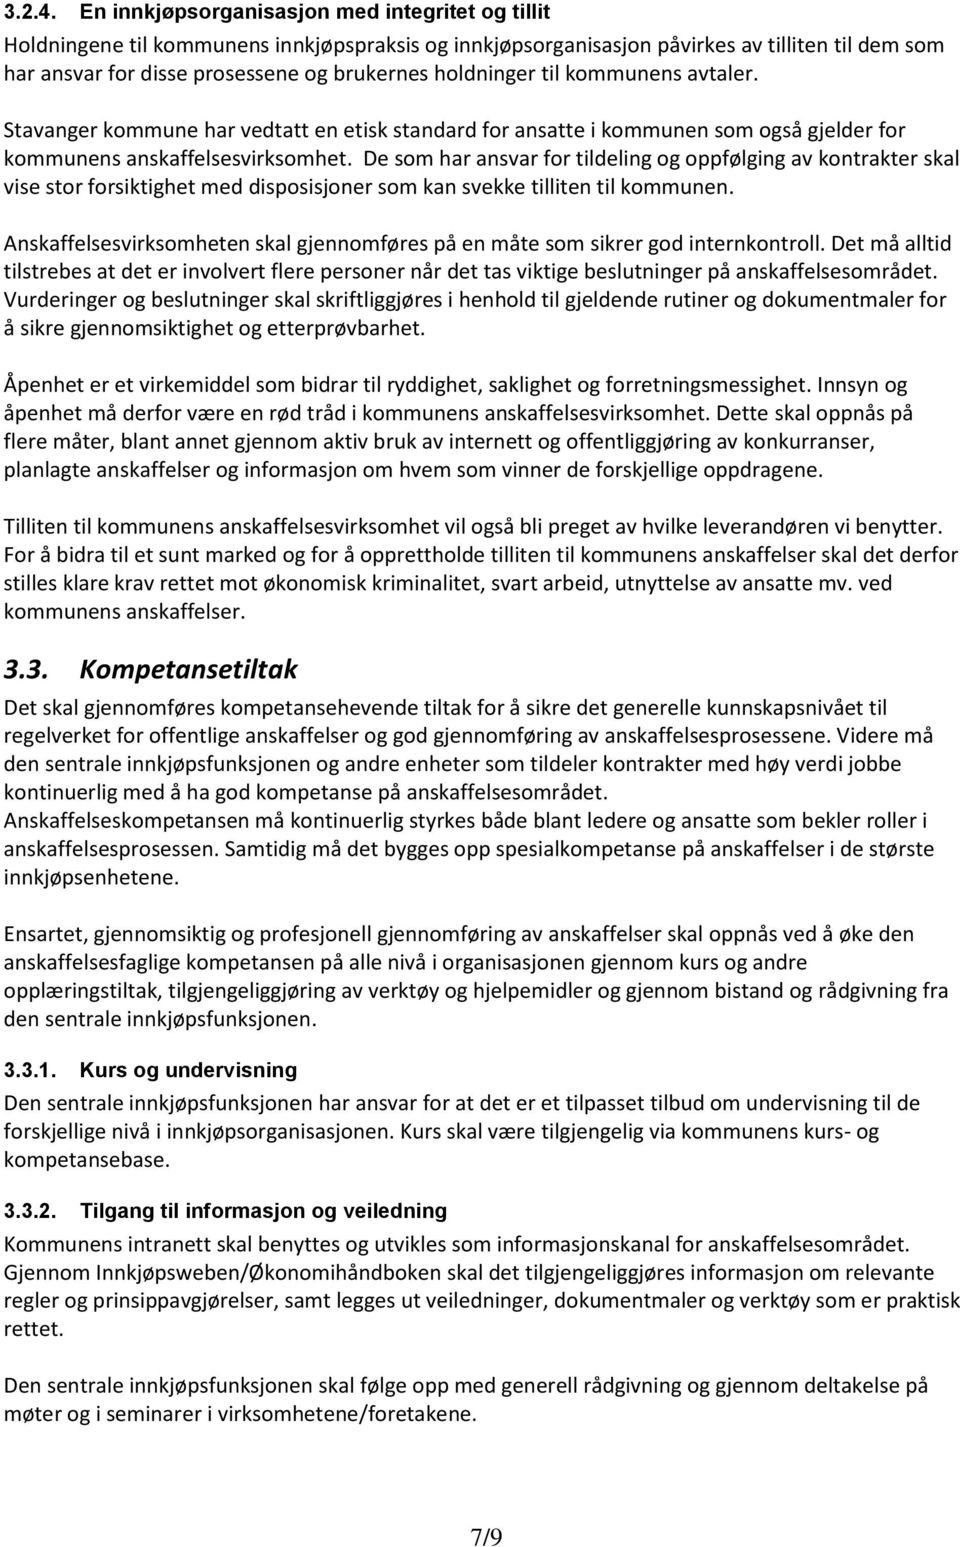 holdninger til kommunens avtaler. Stavanger kommune har vedtatt en etisk standard for ansatte i kommunen som også gjelder for kommunens anskaffelsesvirksomhet.